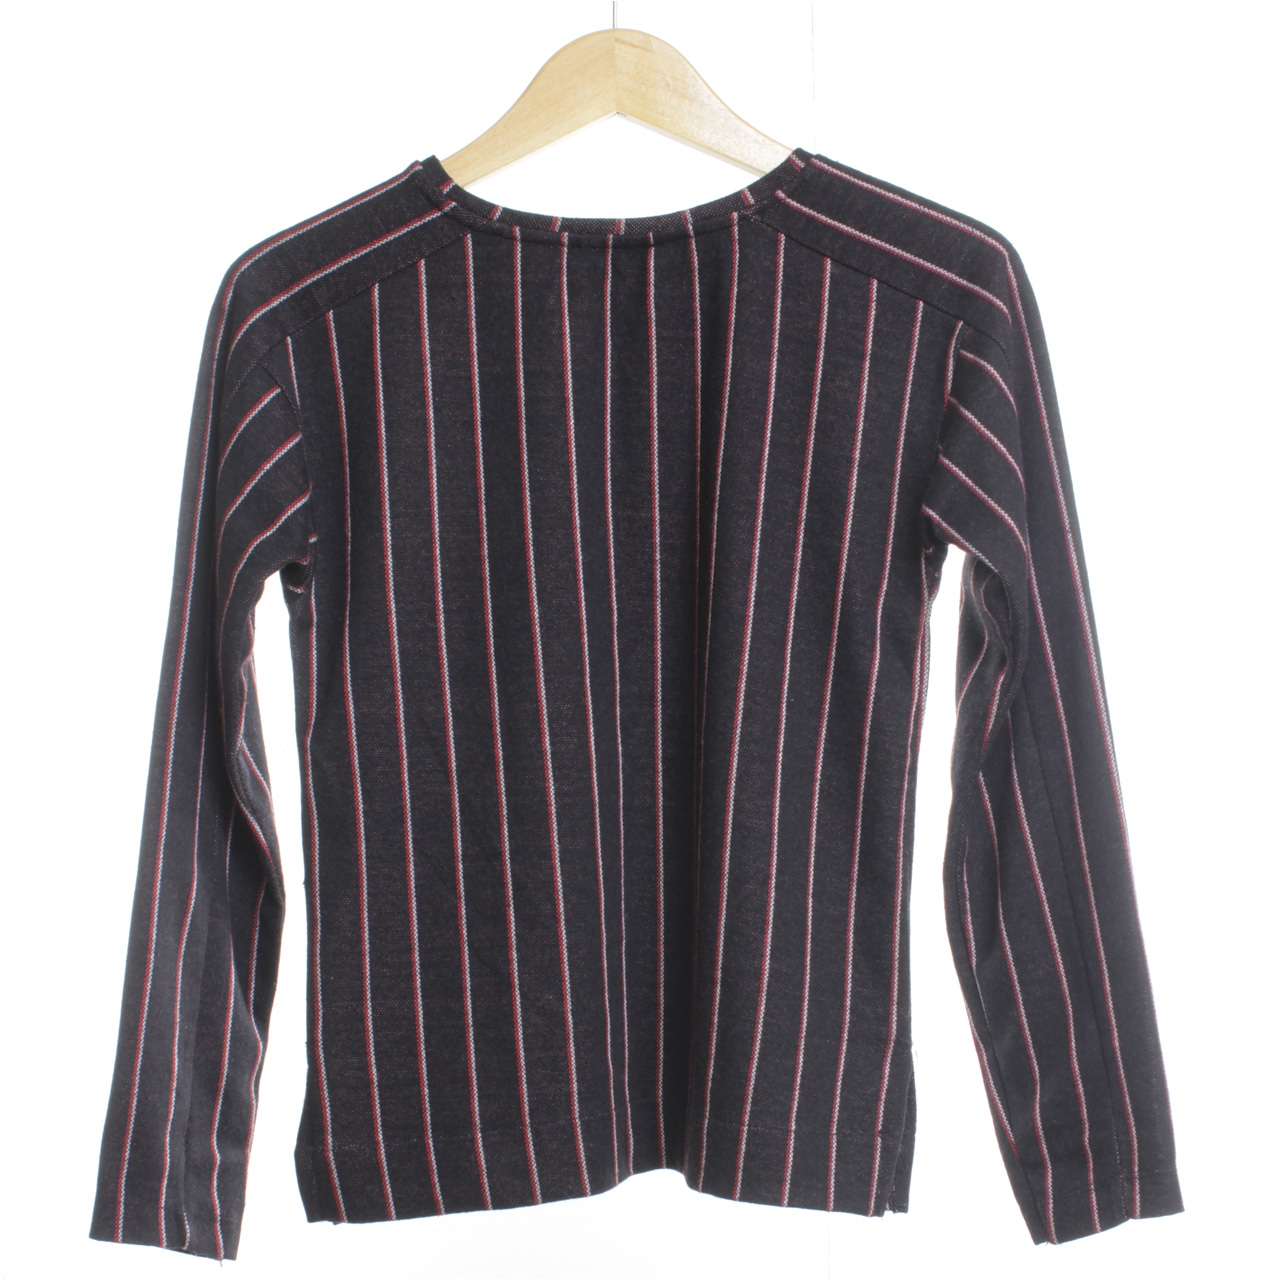 Zara Black Striped Blouse